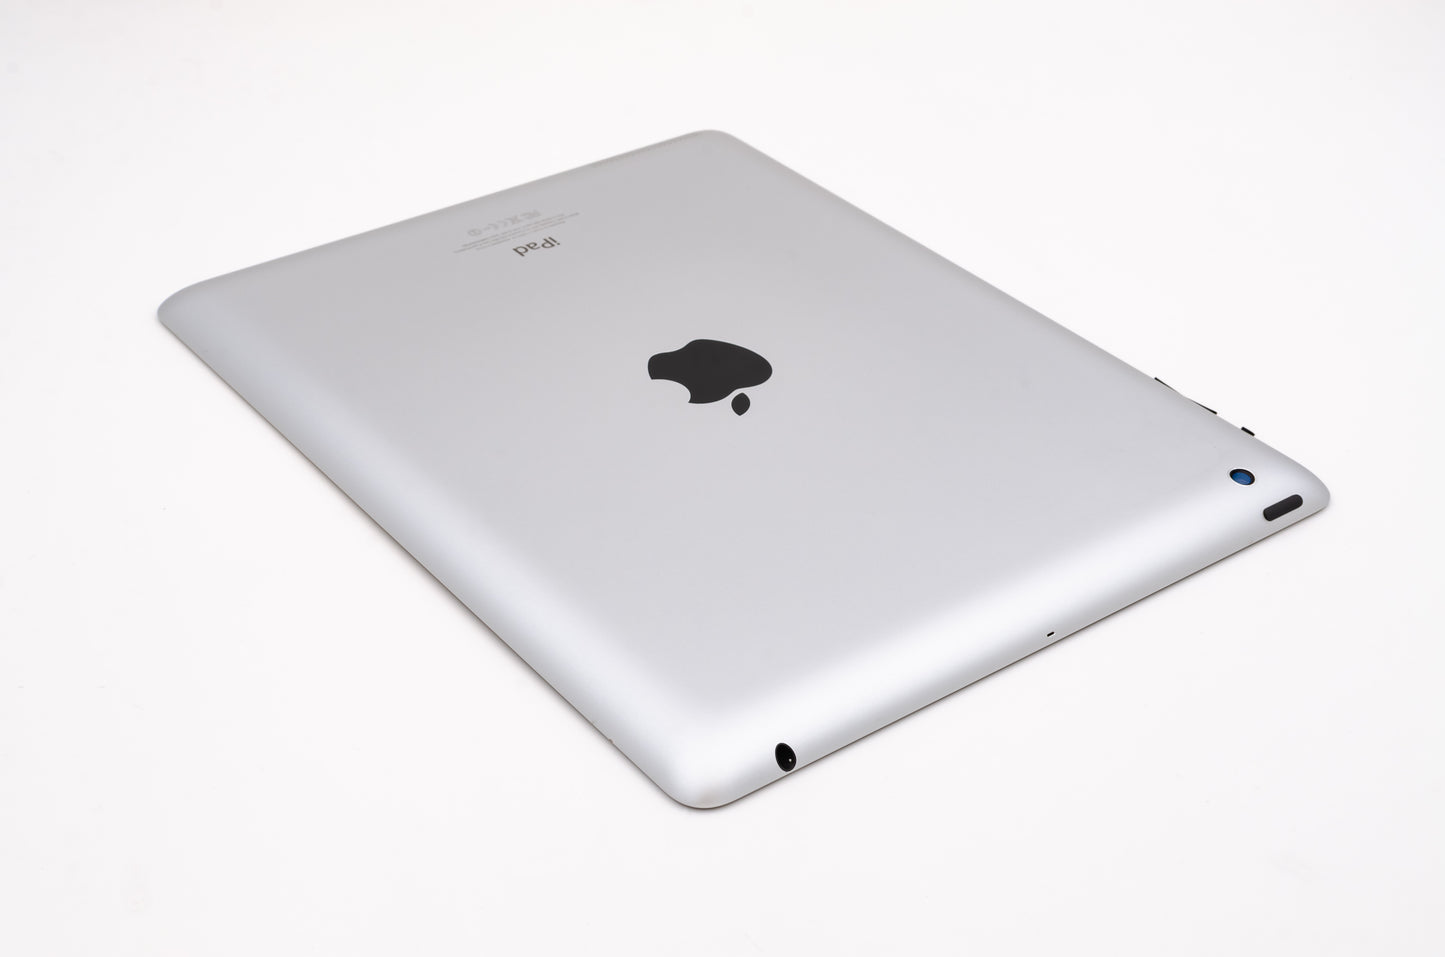 apple-2012-9.7-inch-ipad-4-a1459-silver/black-4